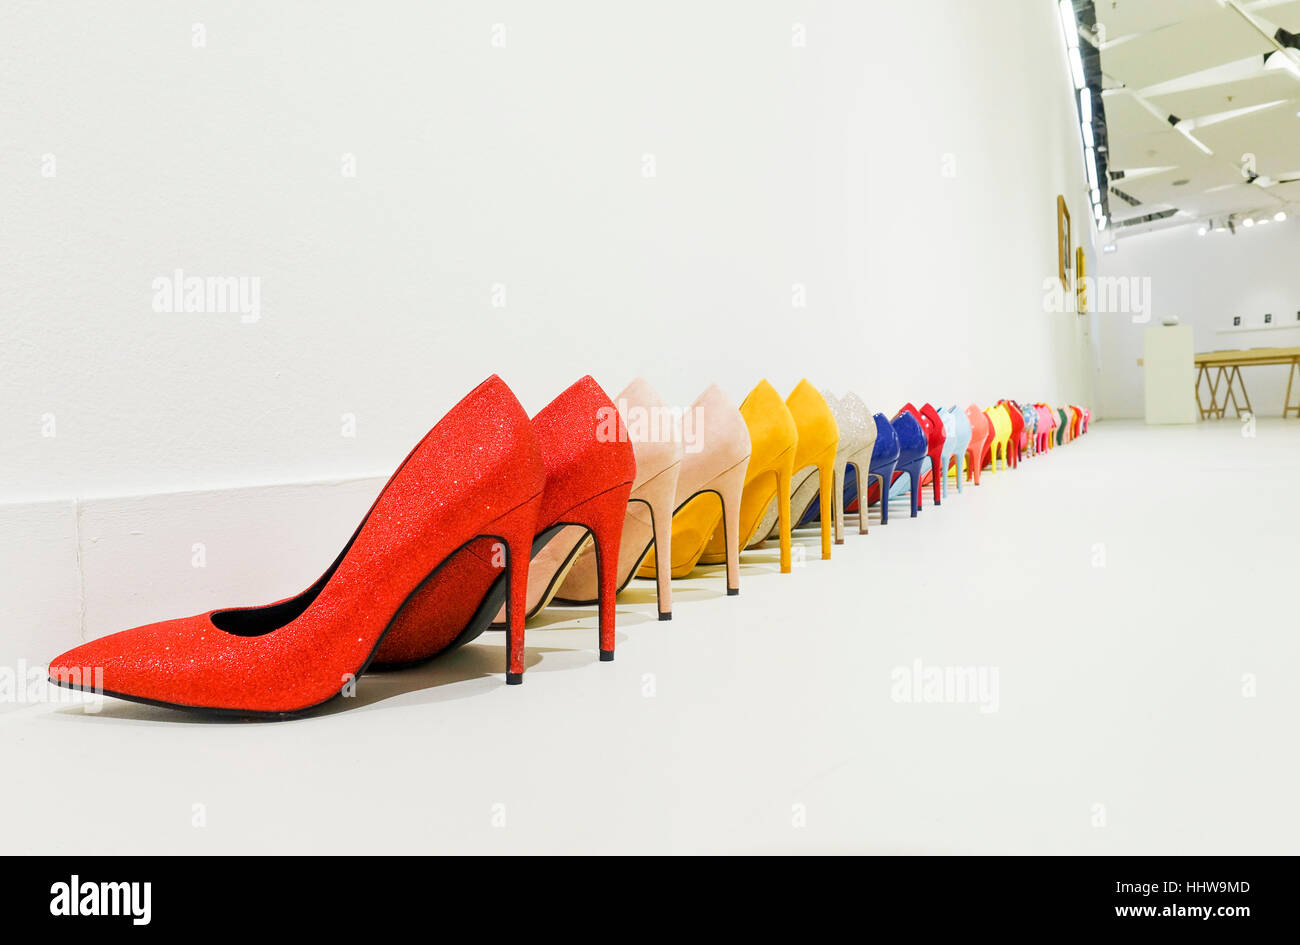 Zapato, Zapatos Stiletto, Stilettos, zapatos de tacón alto, exposición de  arte en la galería del centro comercial Galeries Lafayette, París, Francia  Fotografía de stock - Alamy